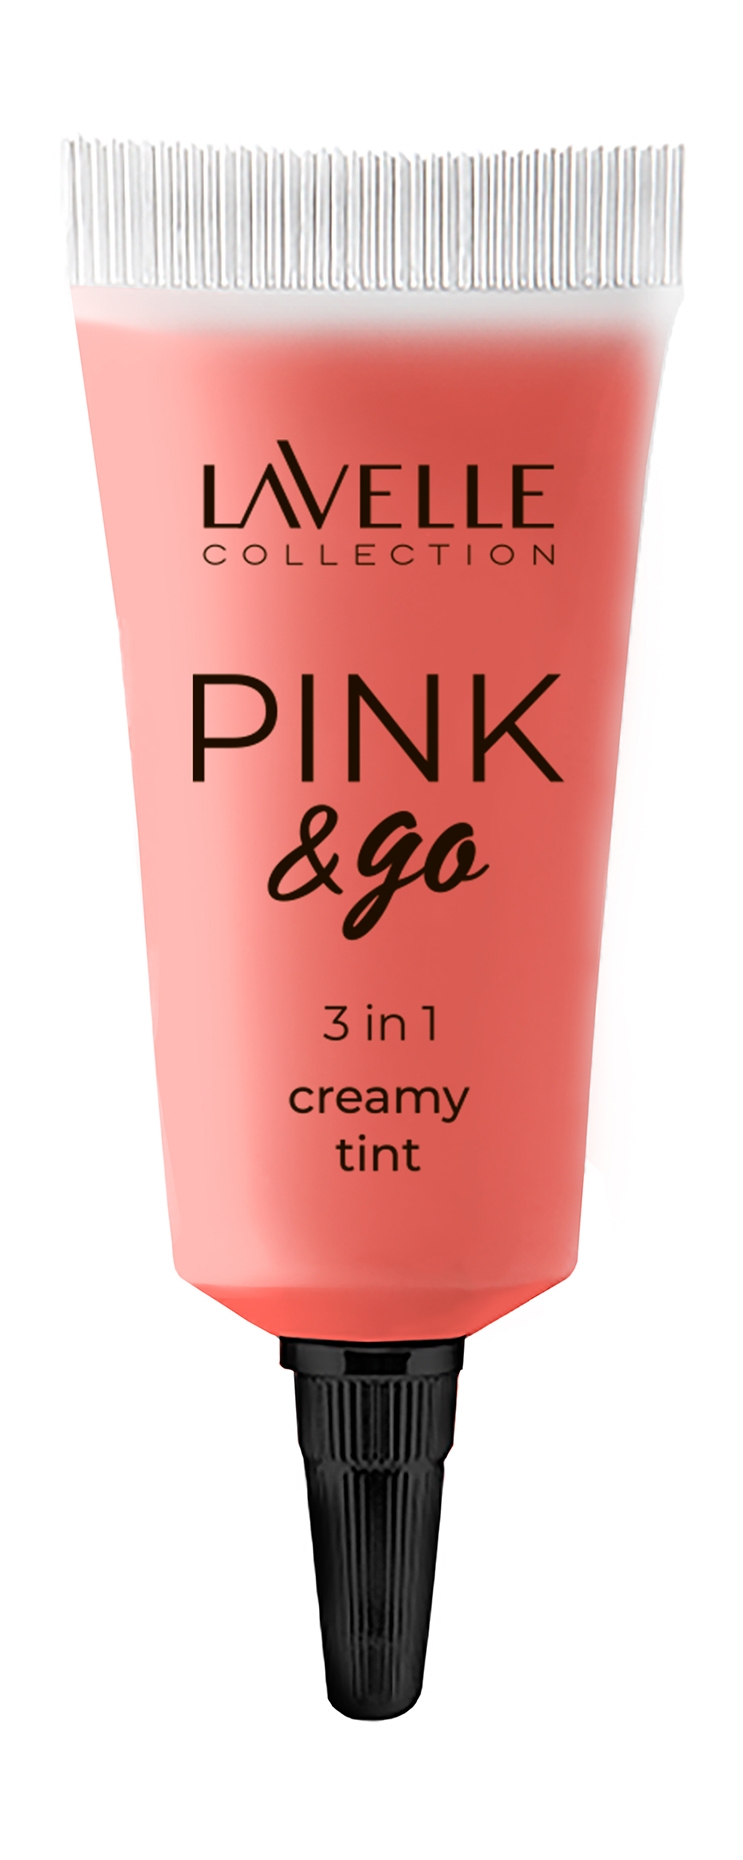 Тинт для губ и лица Lavelle Collection Pink & Go 3-in-1 Creamy Tint тон № 02 7 мл lavelle collection кремовый стик для макияжа лица highlighter холодный розовый